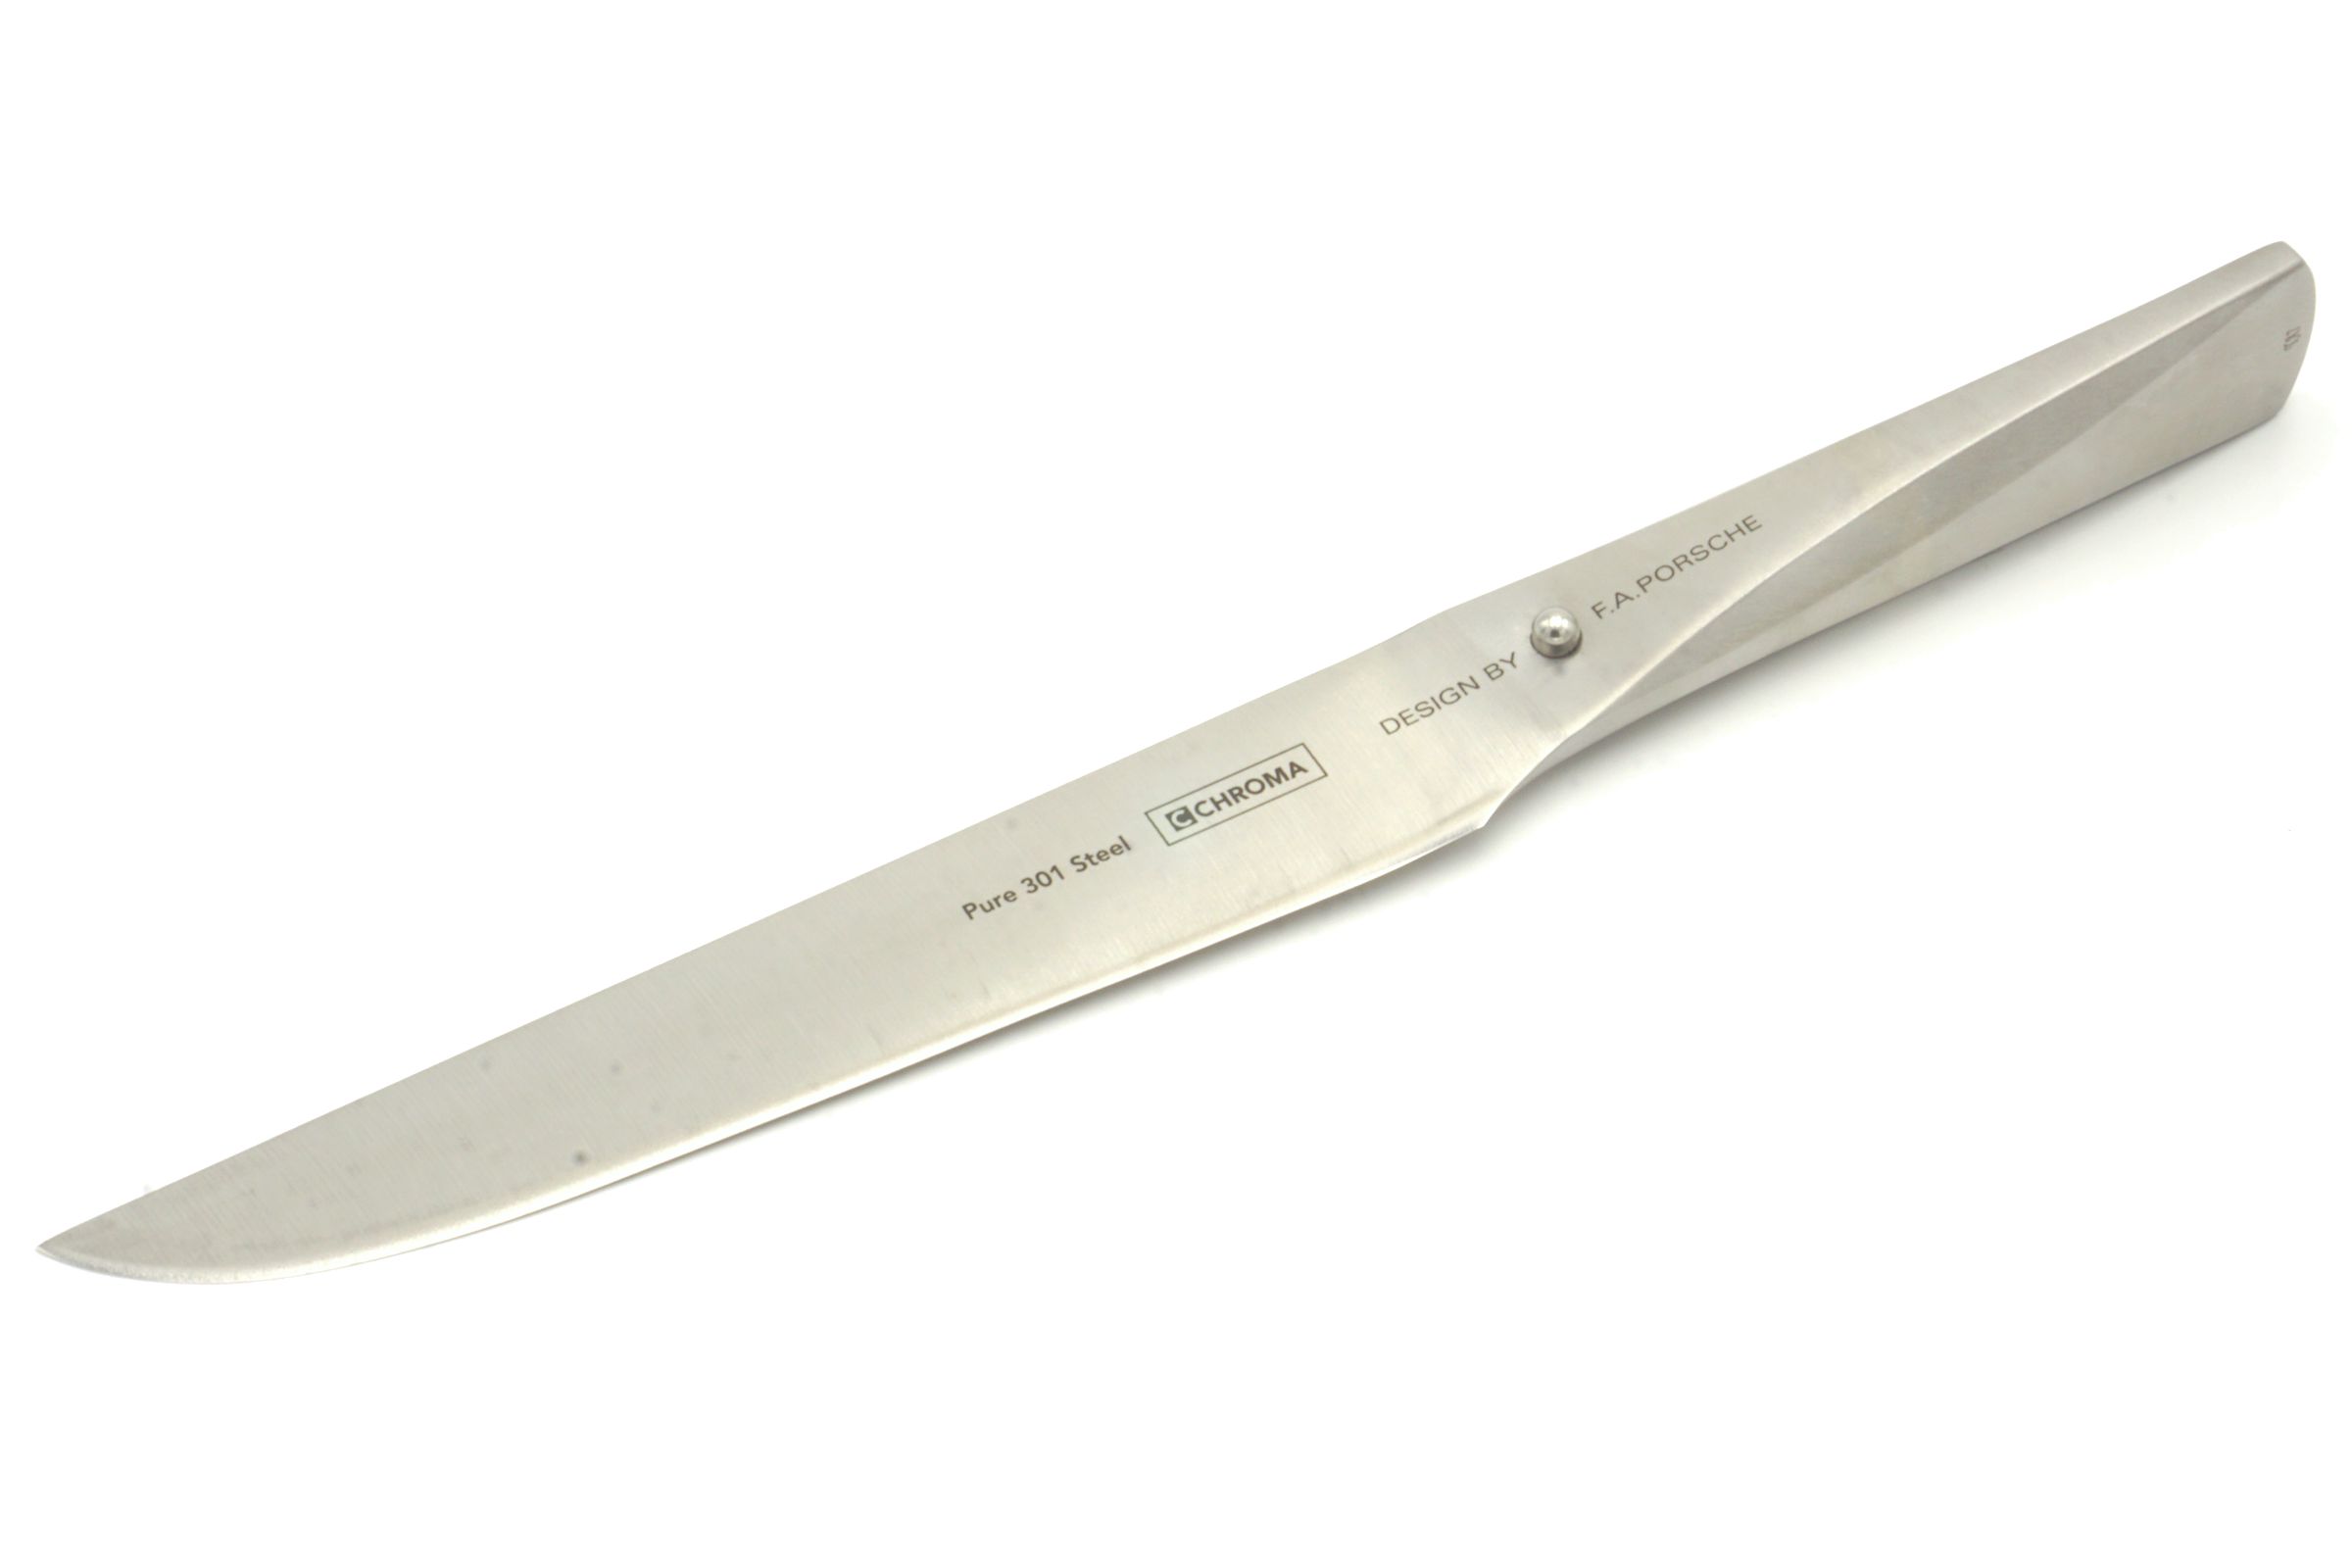 CHROMA Type 301 Wagyu Messer - Produktansicht